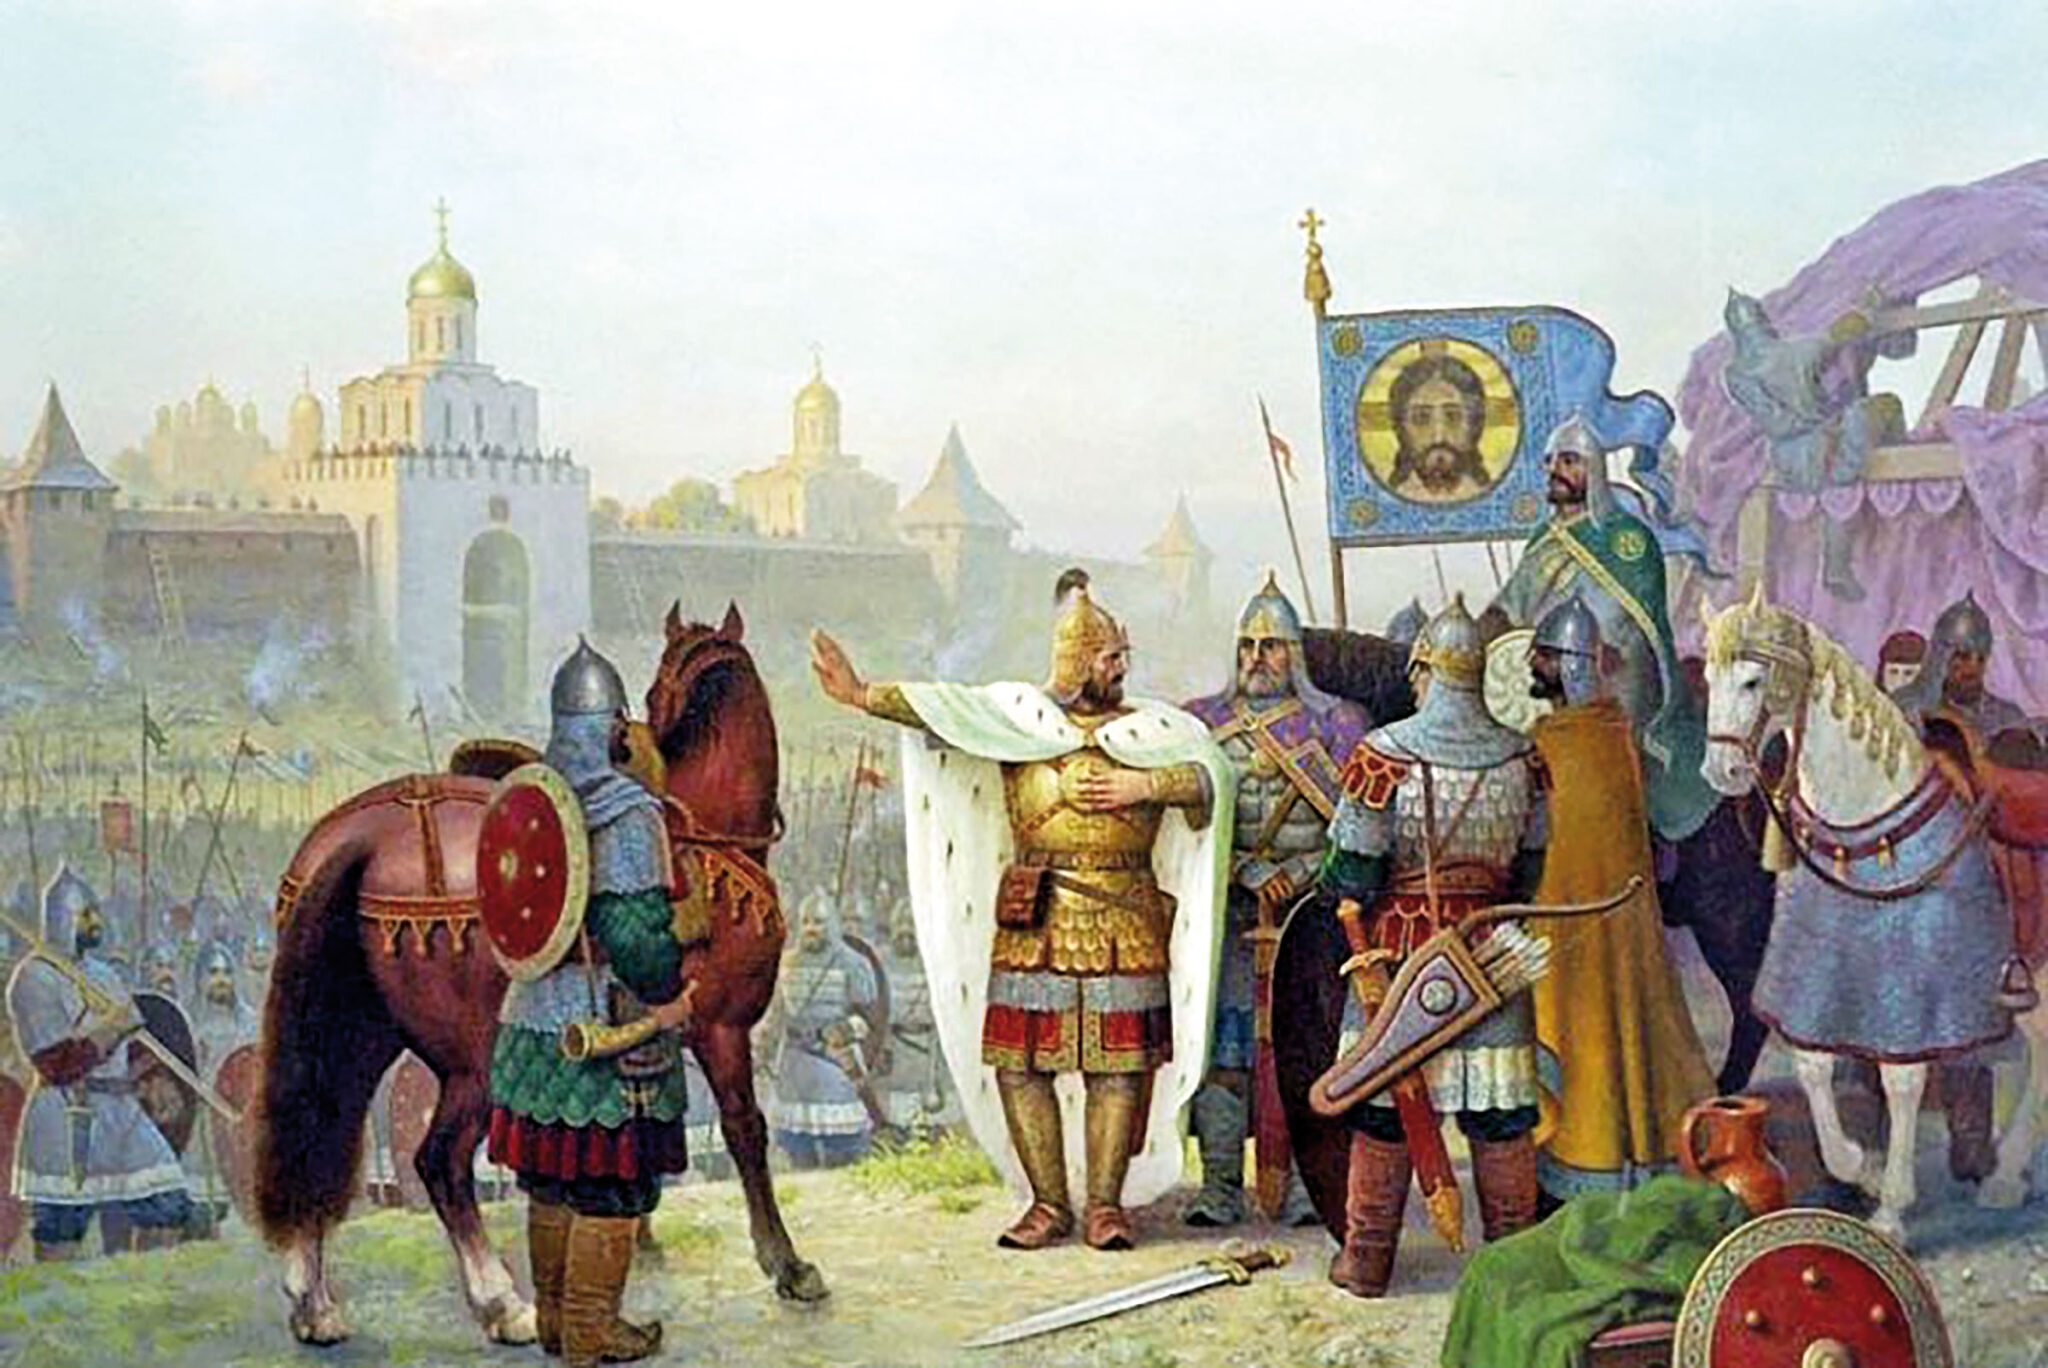 Киевский престол в xii в